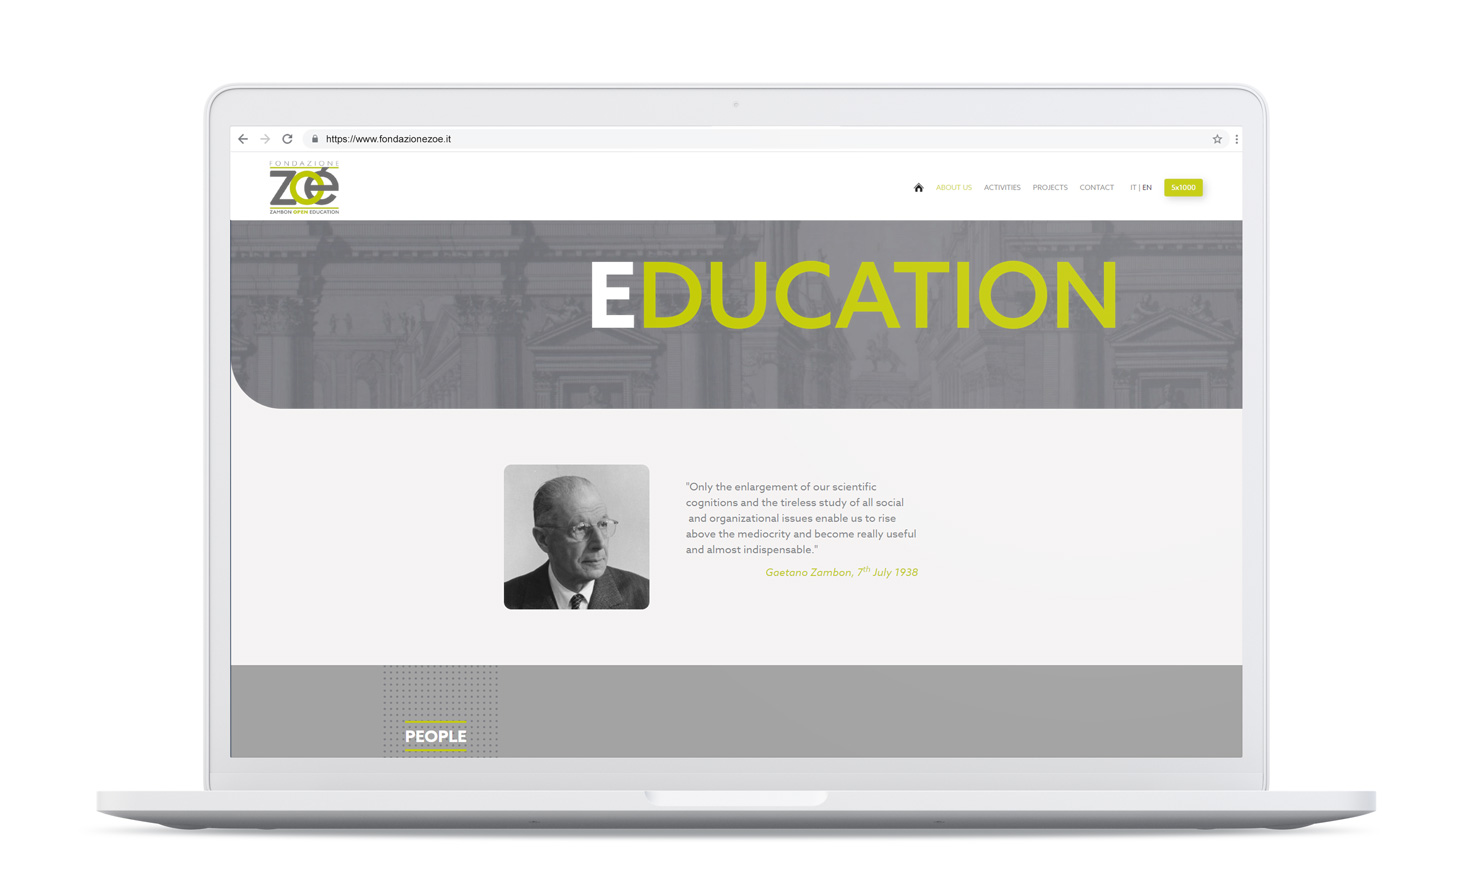 WEB DESIGN AND DEVELOPMENT Fondazione Zoé / Zambon Group